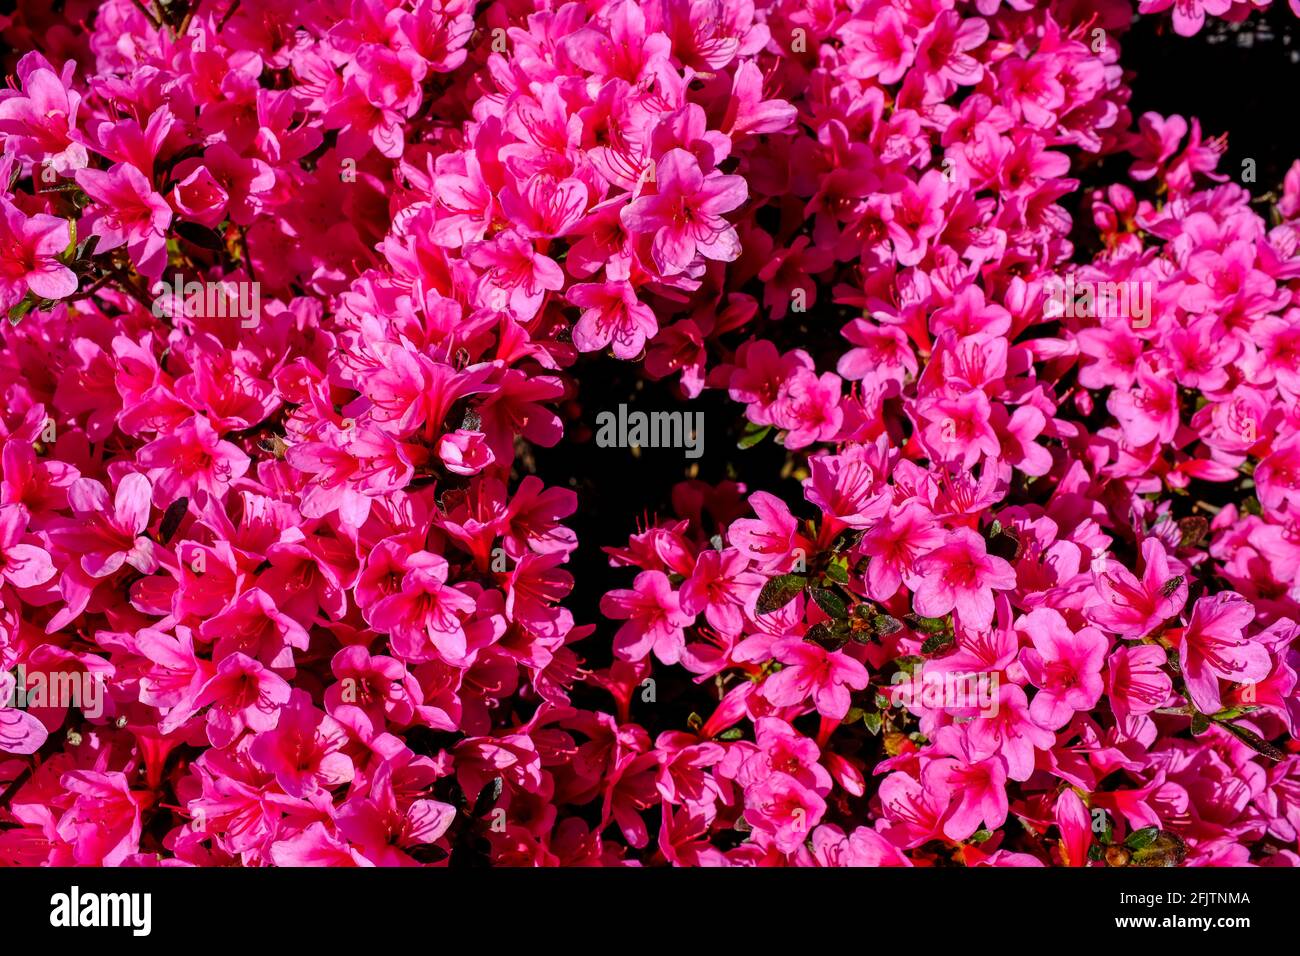 26.04.2021, Essen, Ruhrgebiet, Nordrhein-Westfalen, Deutschland - Azaleenblüten auf einem Friedhof im Essener Stadtteil Holsterhausen Stock Photo